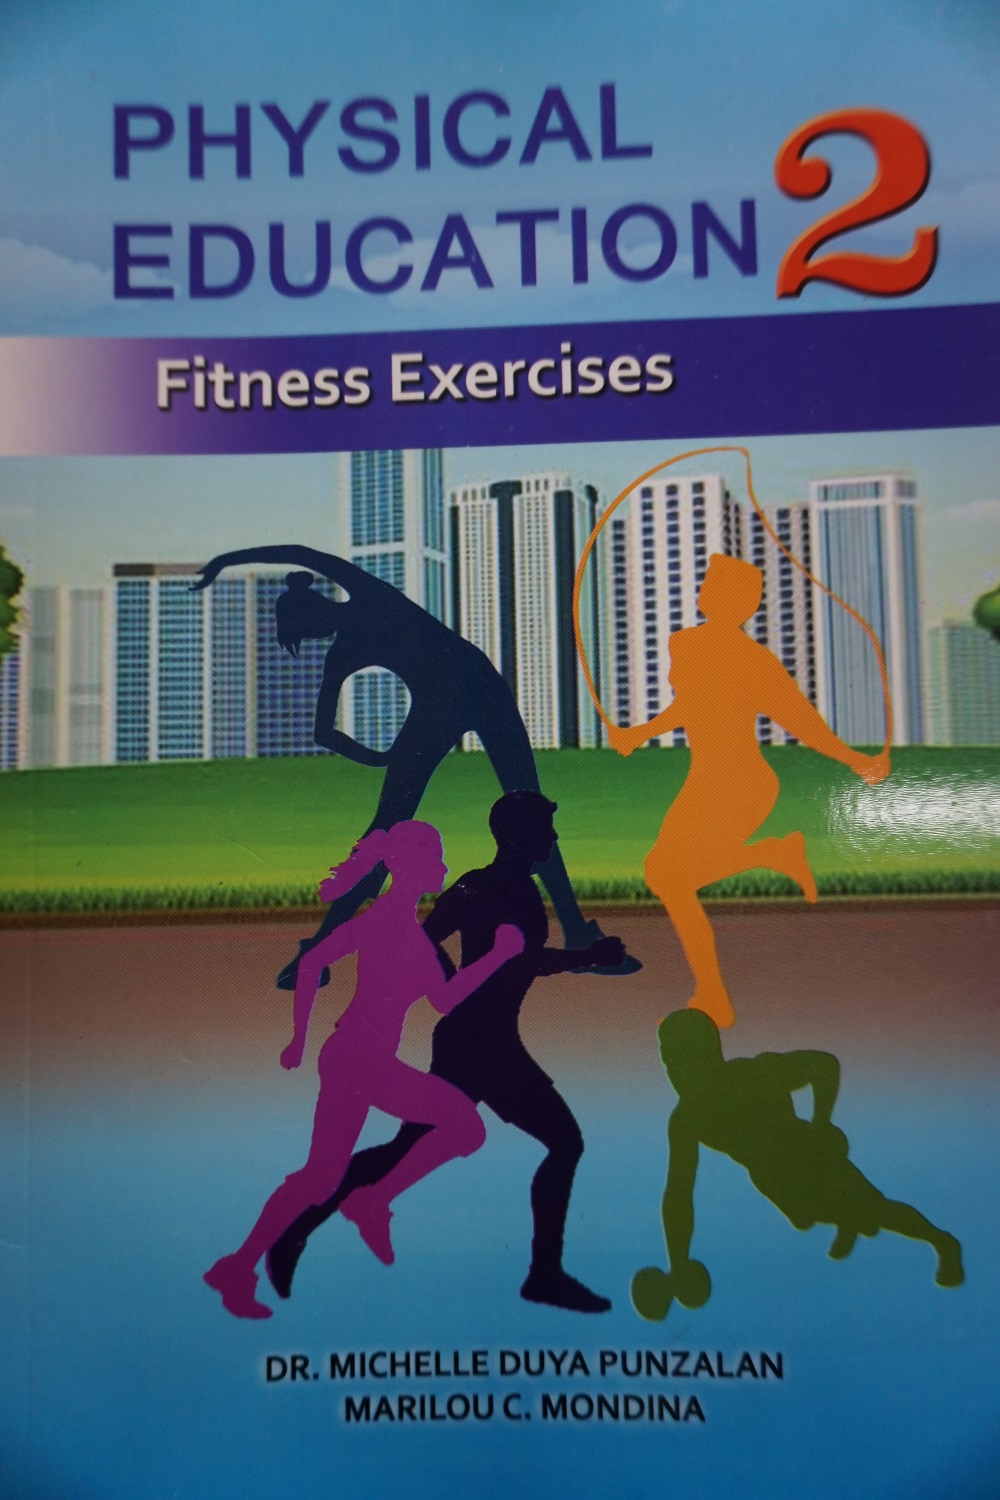 Physical Education 2 Fitness Exercises - Mindshapers Publishing